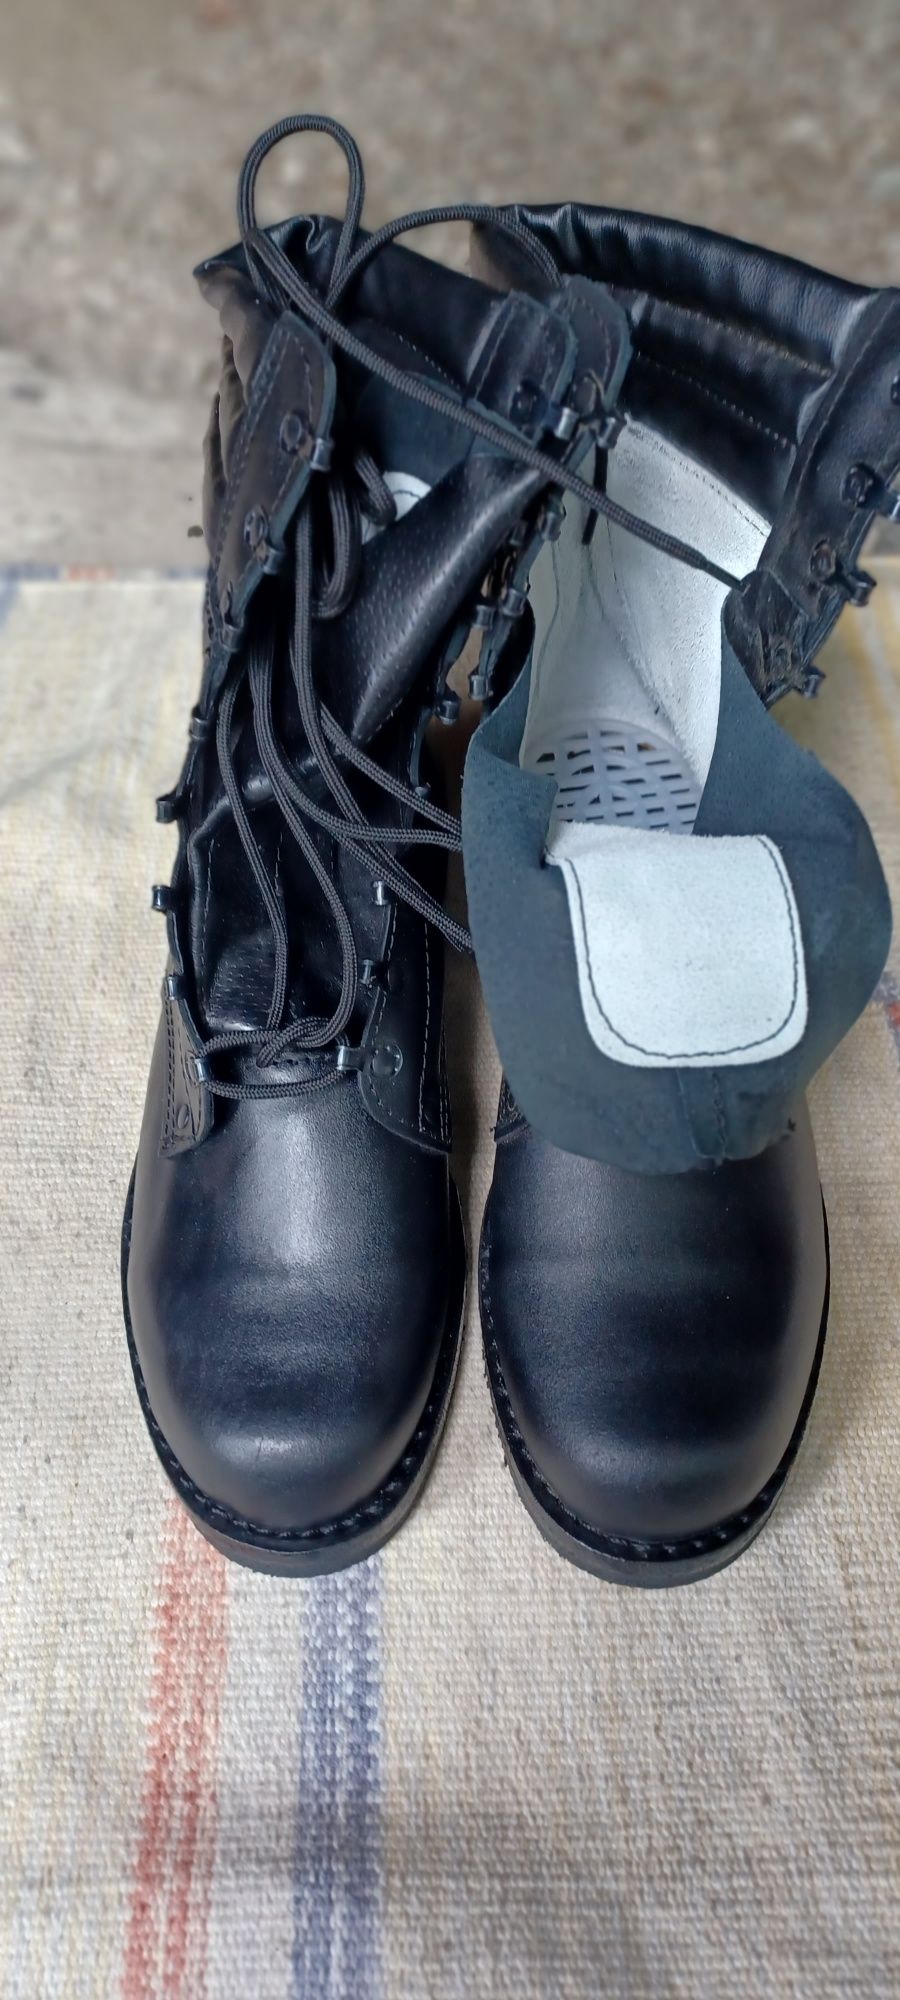 Buty wojskowe tzw skoczki